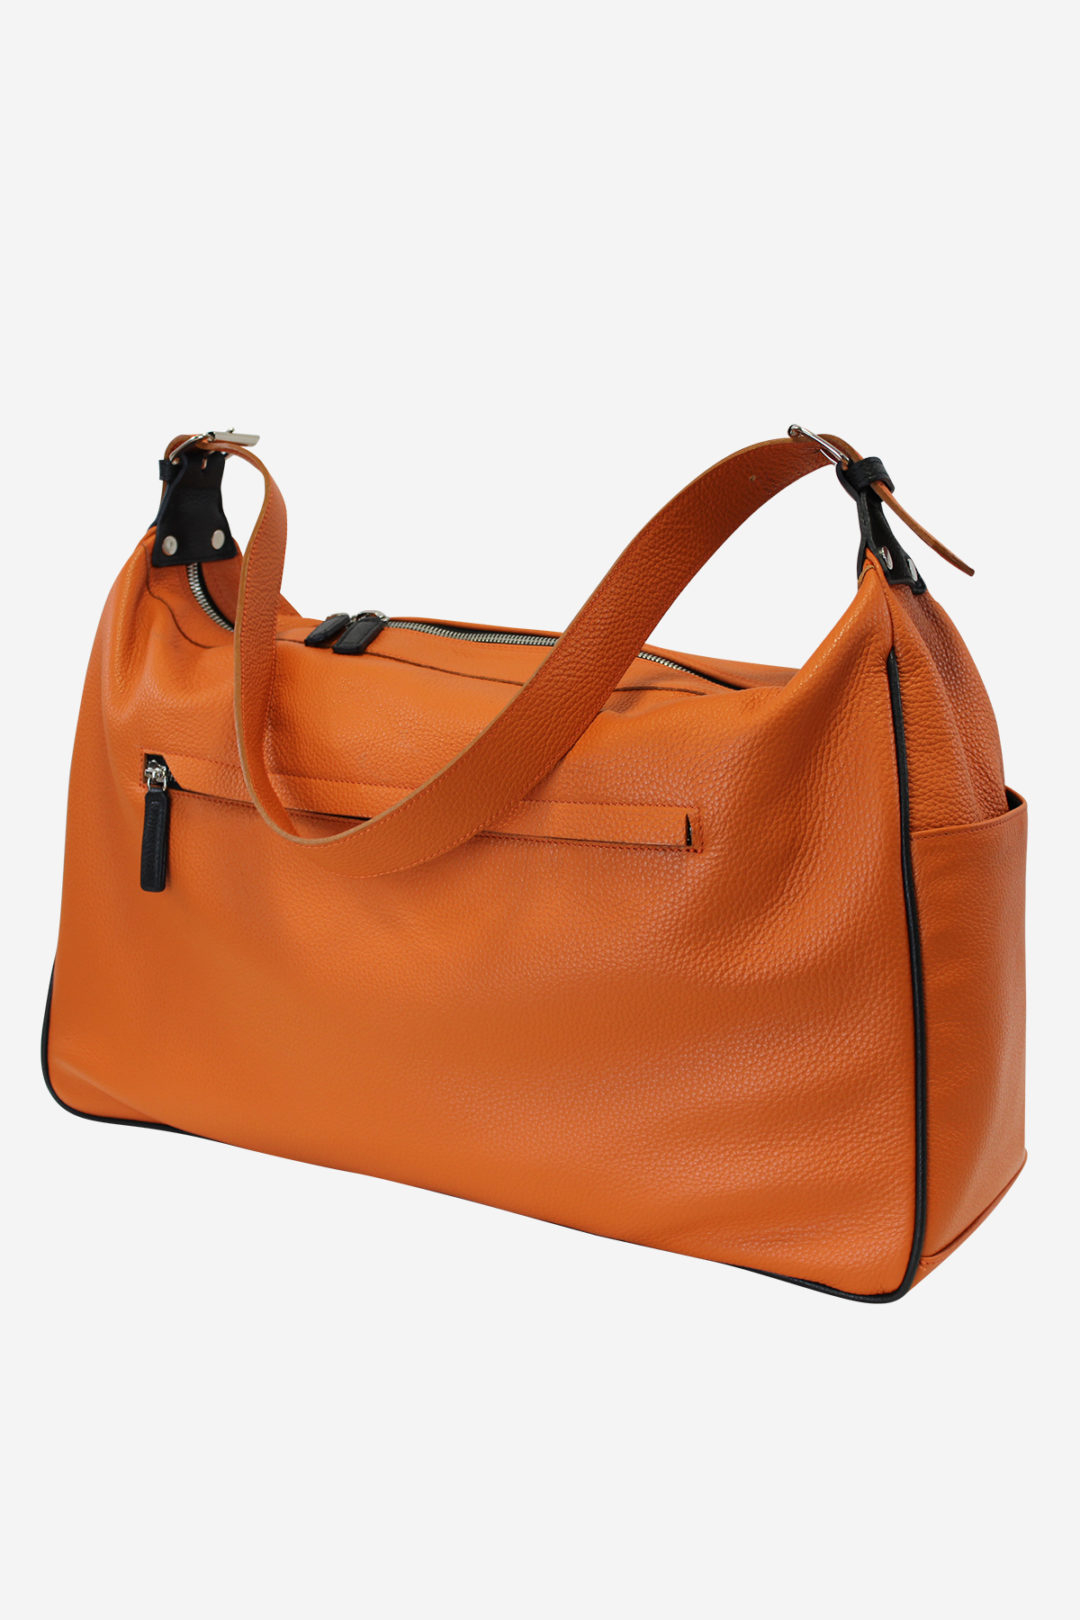 Modern Sport Bag orange waterproof leather handmade